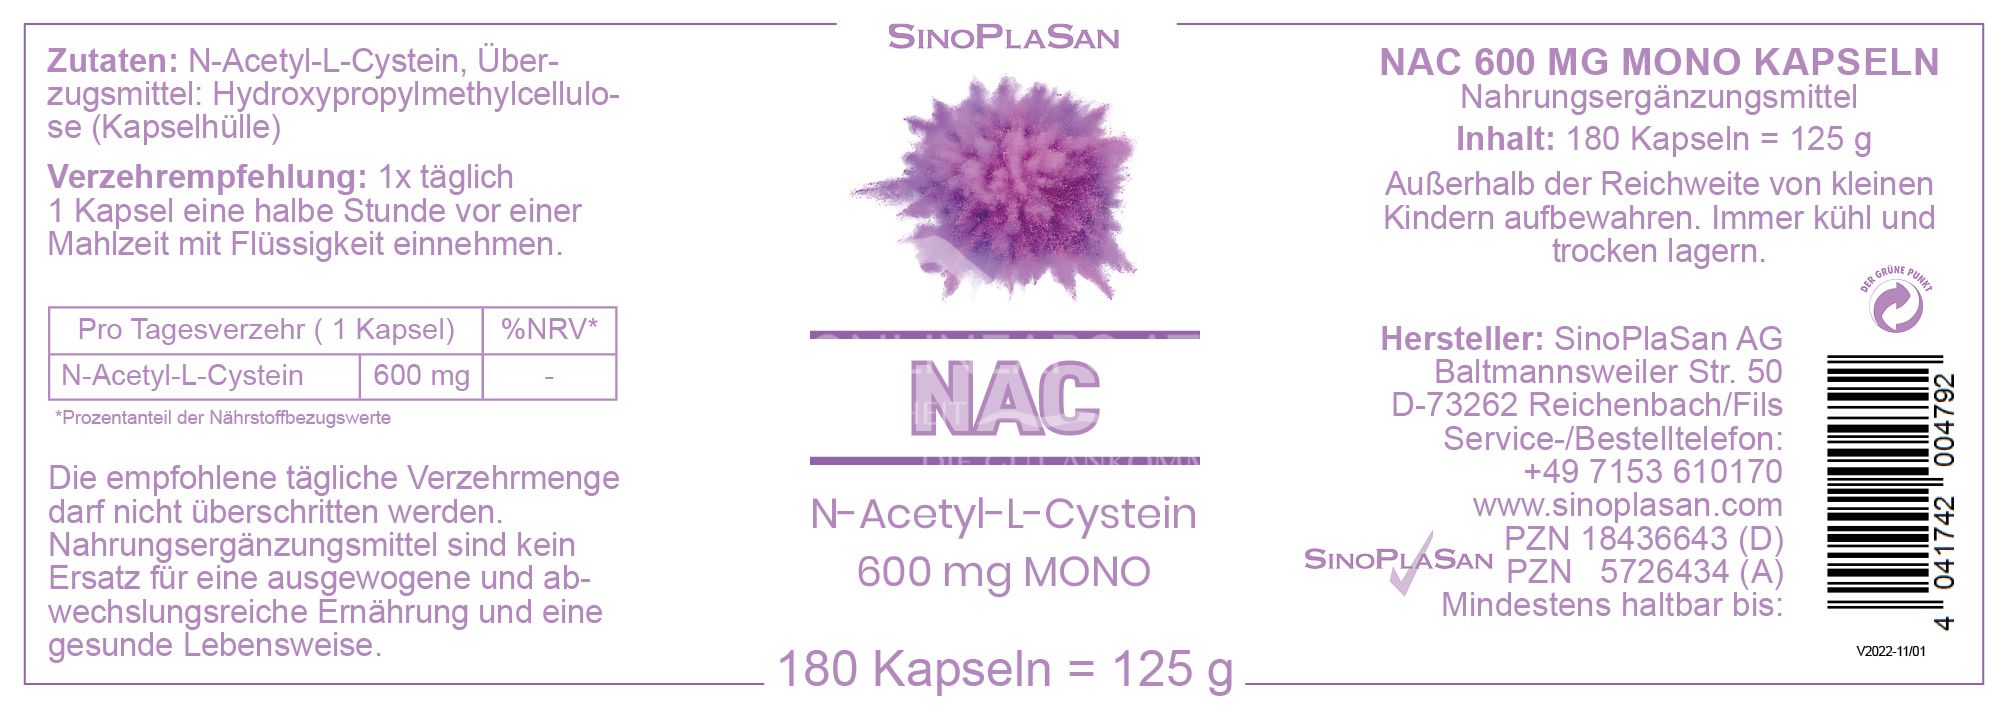 SinoPlaSan NAC N-Acetyl-L-Cystein 600 mg MONO Kapseln